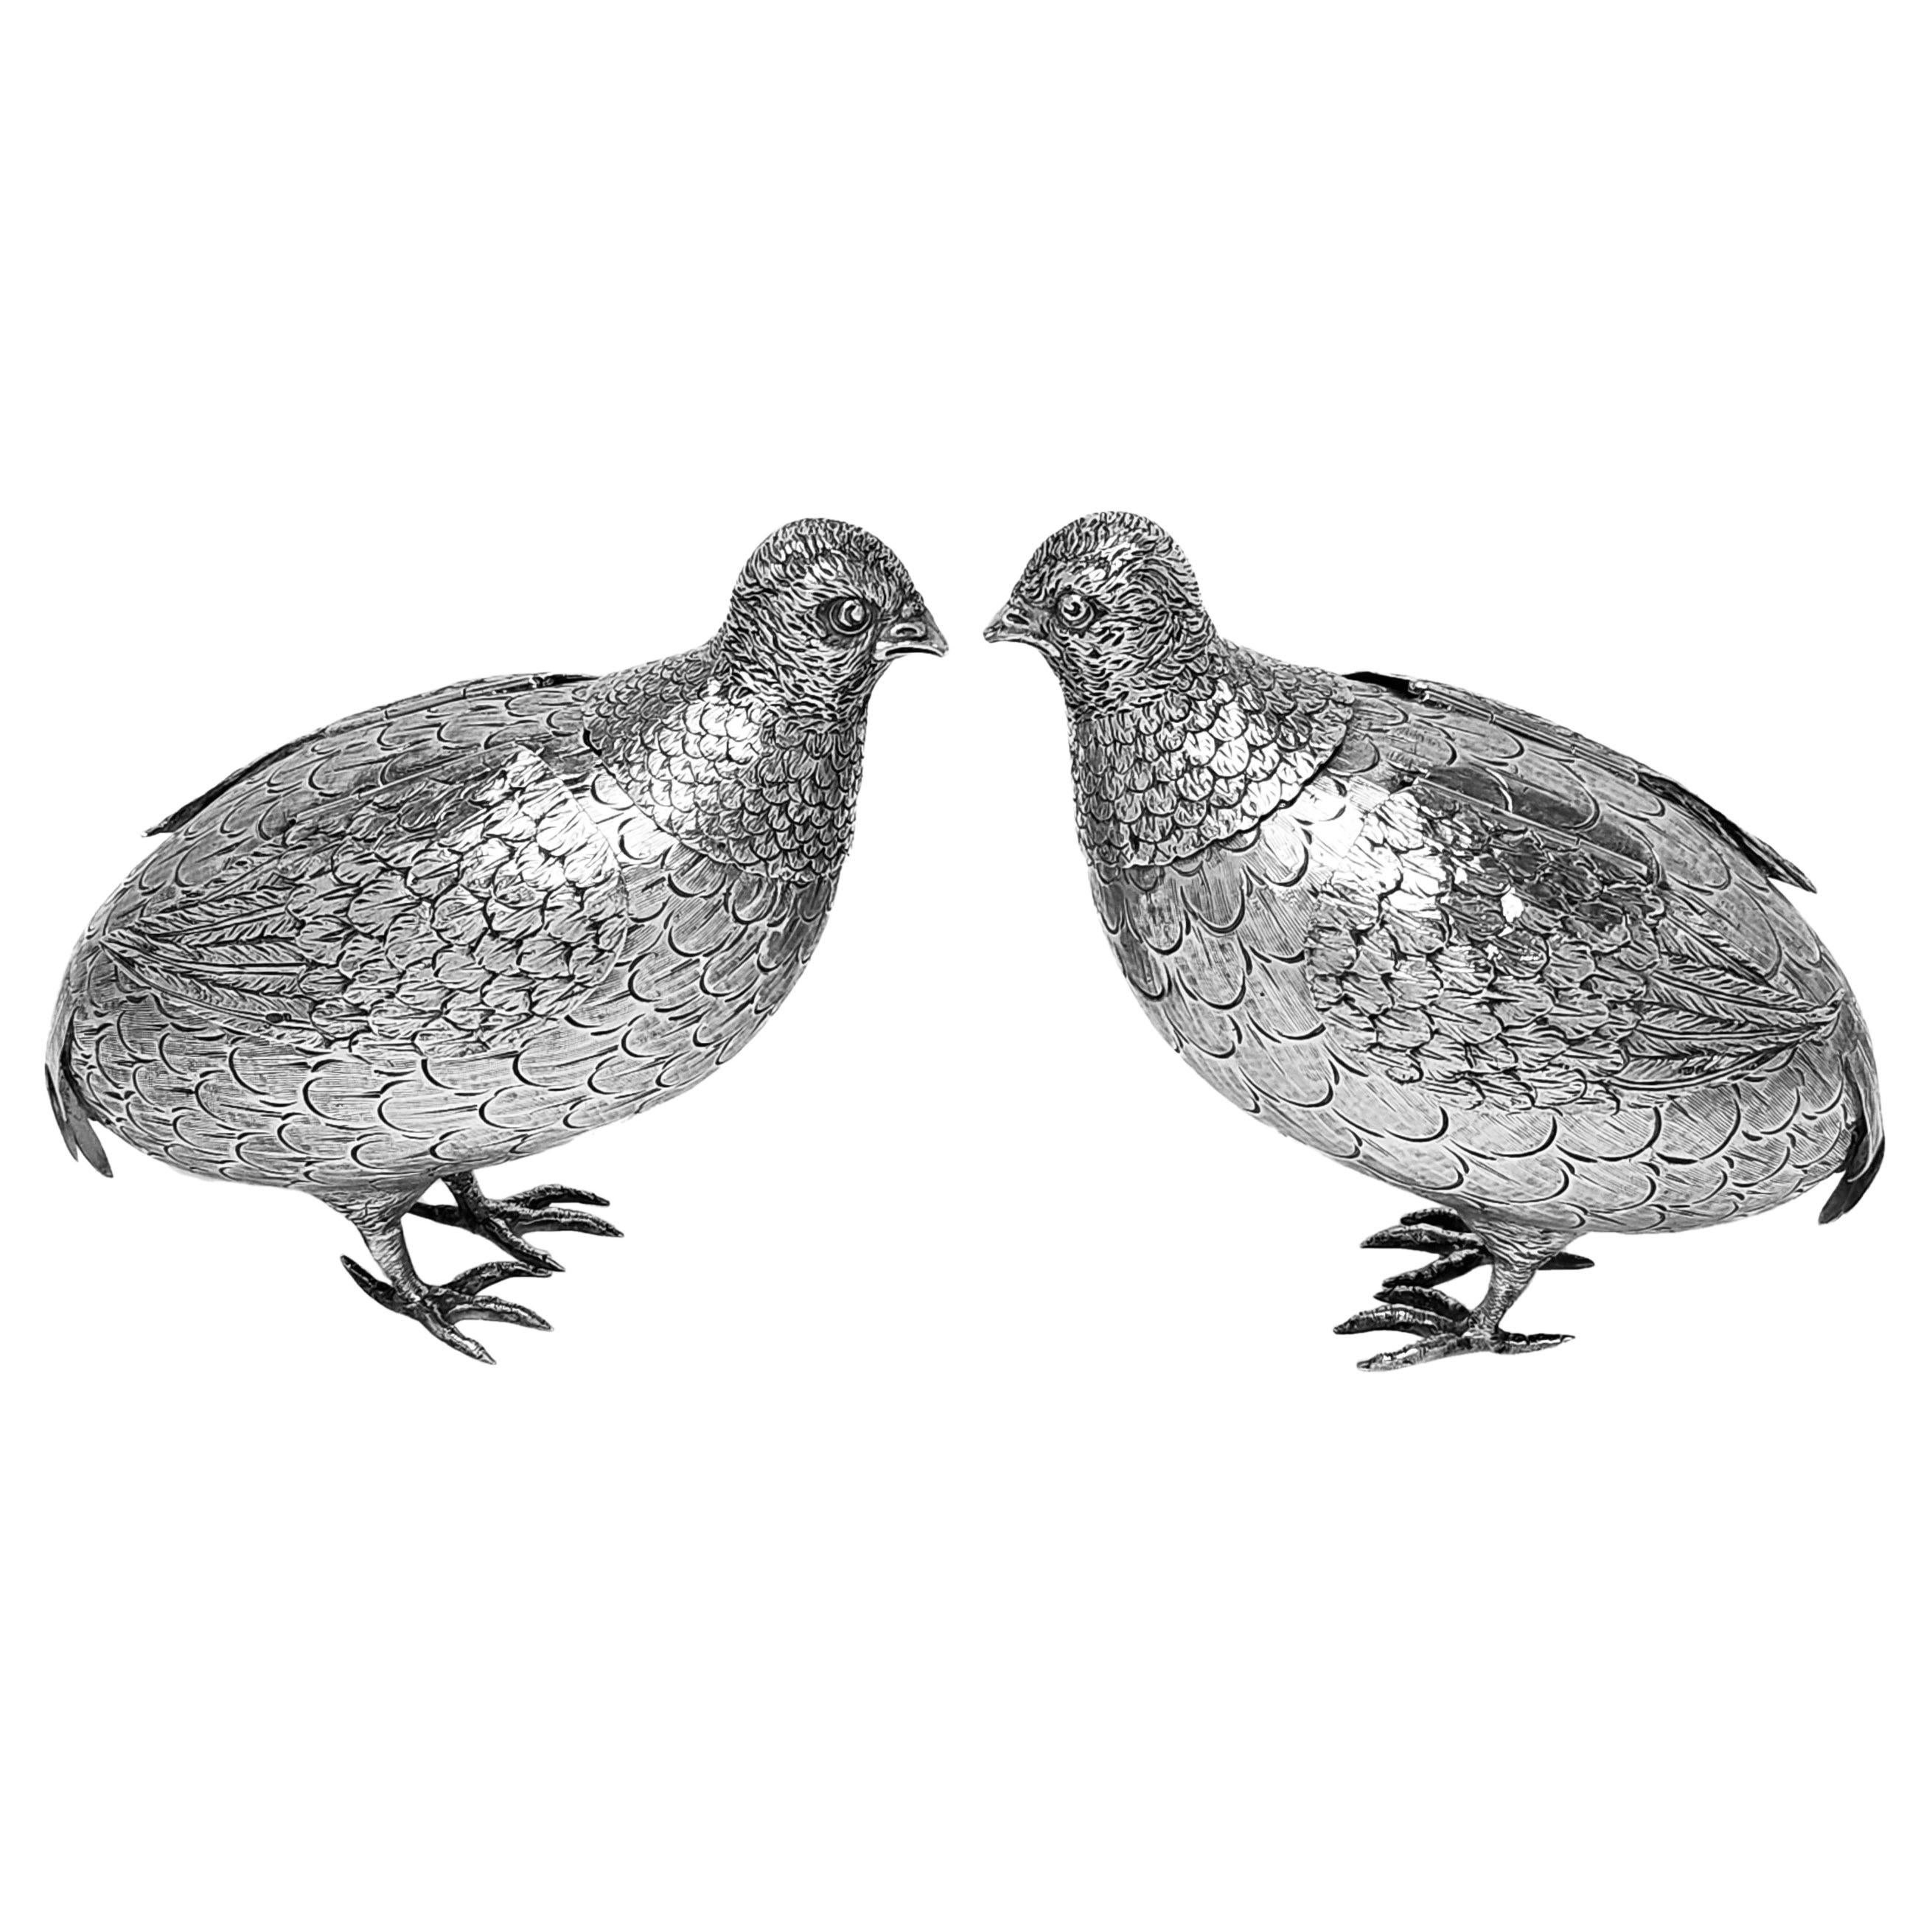 Une paire de jolis modèles de tétraonidés en argent ancien créés avec un grand souci du détail. Ces oiseaux en argent sterling ont des ailes en argent à charnière et sont de bonne taille. 

Fabriqué en Allemagne vers 1909 par Berthold Muller.